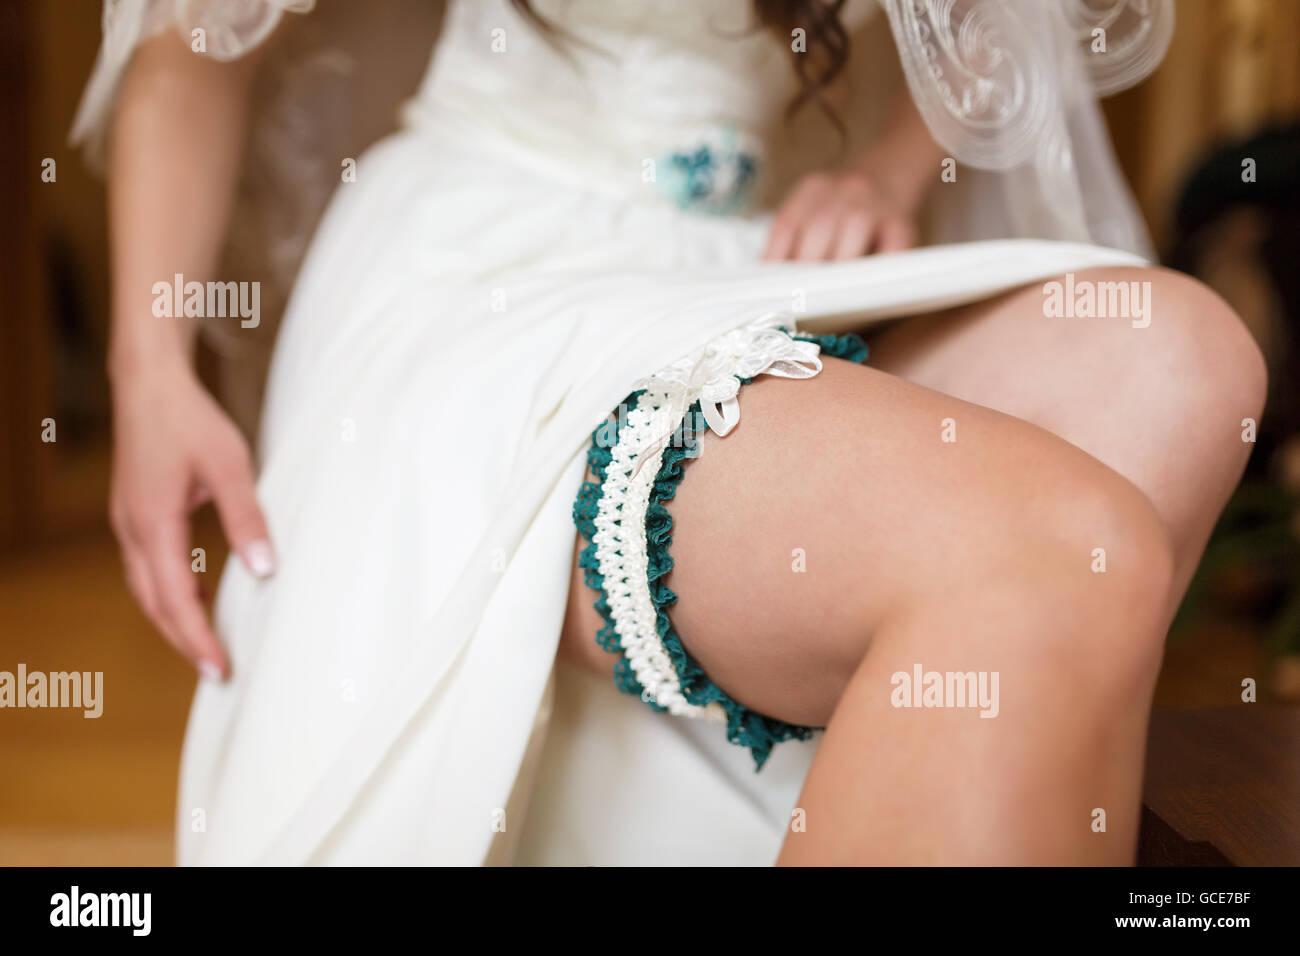 Jolie mariée met sur le porte-jarretelles sur sa jambe dans la chambre Banque D'Images